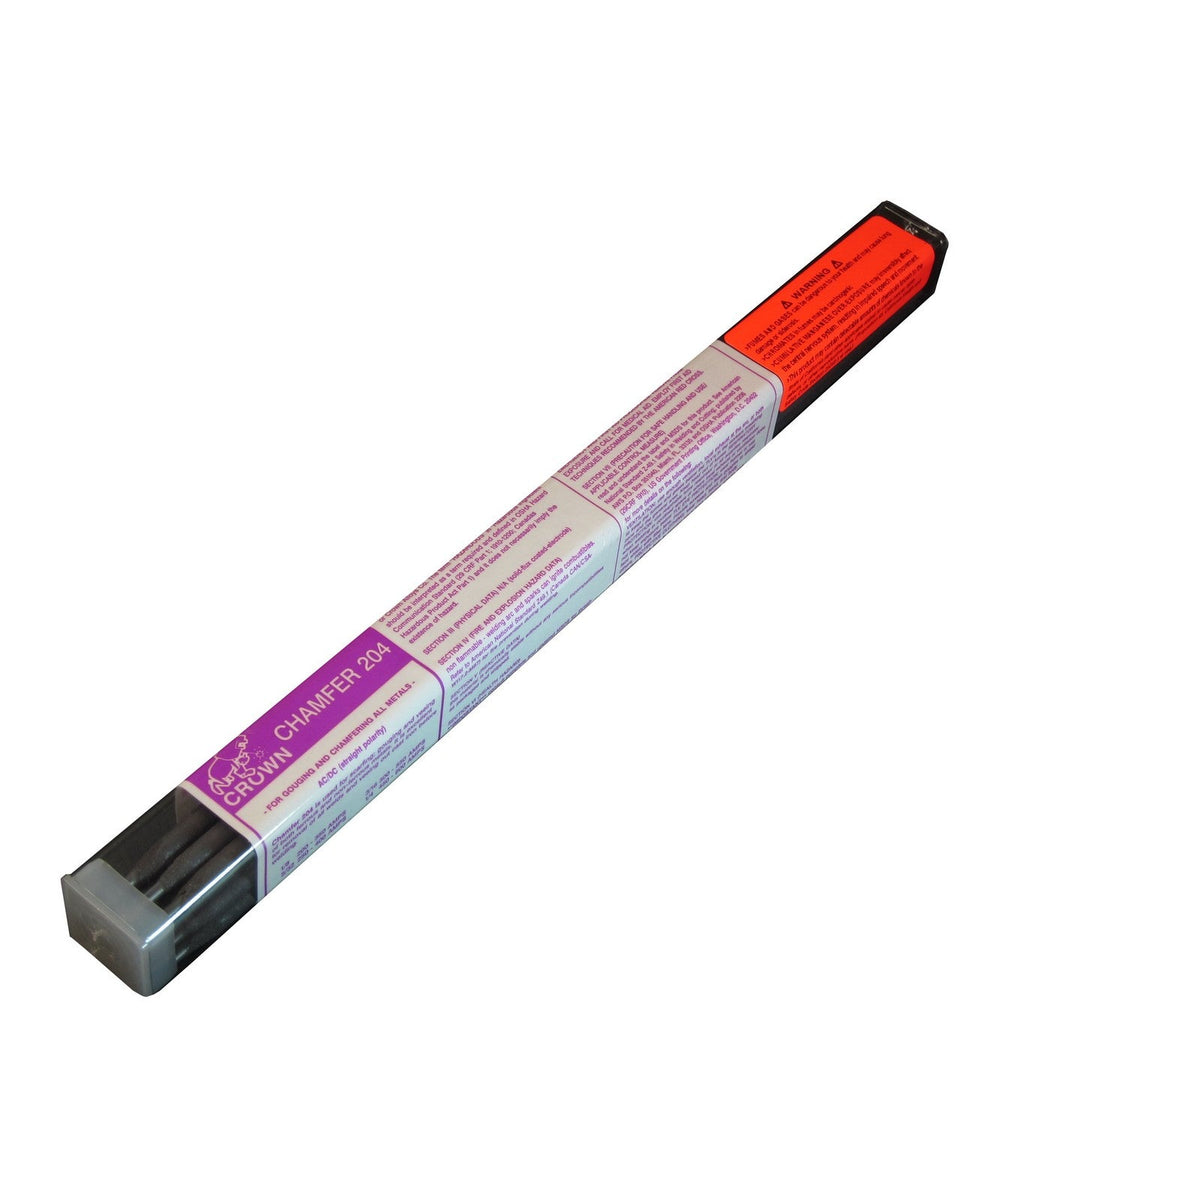 > Marking Tools > Welder's Pencil - Red